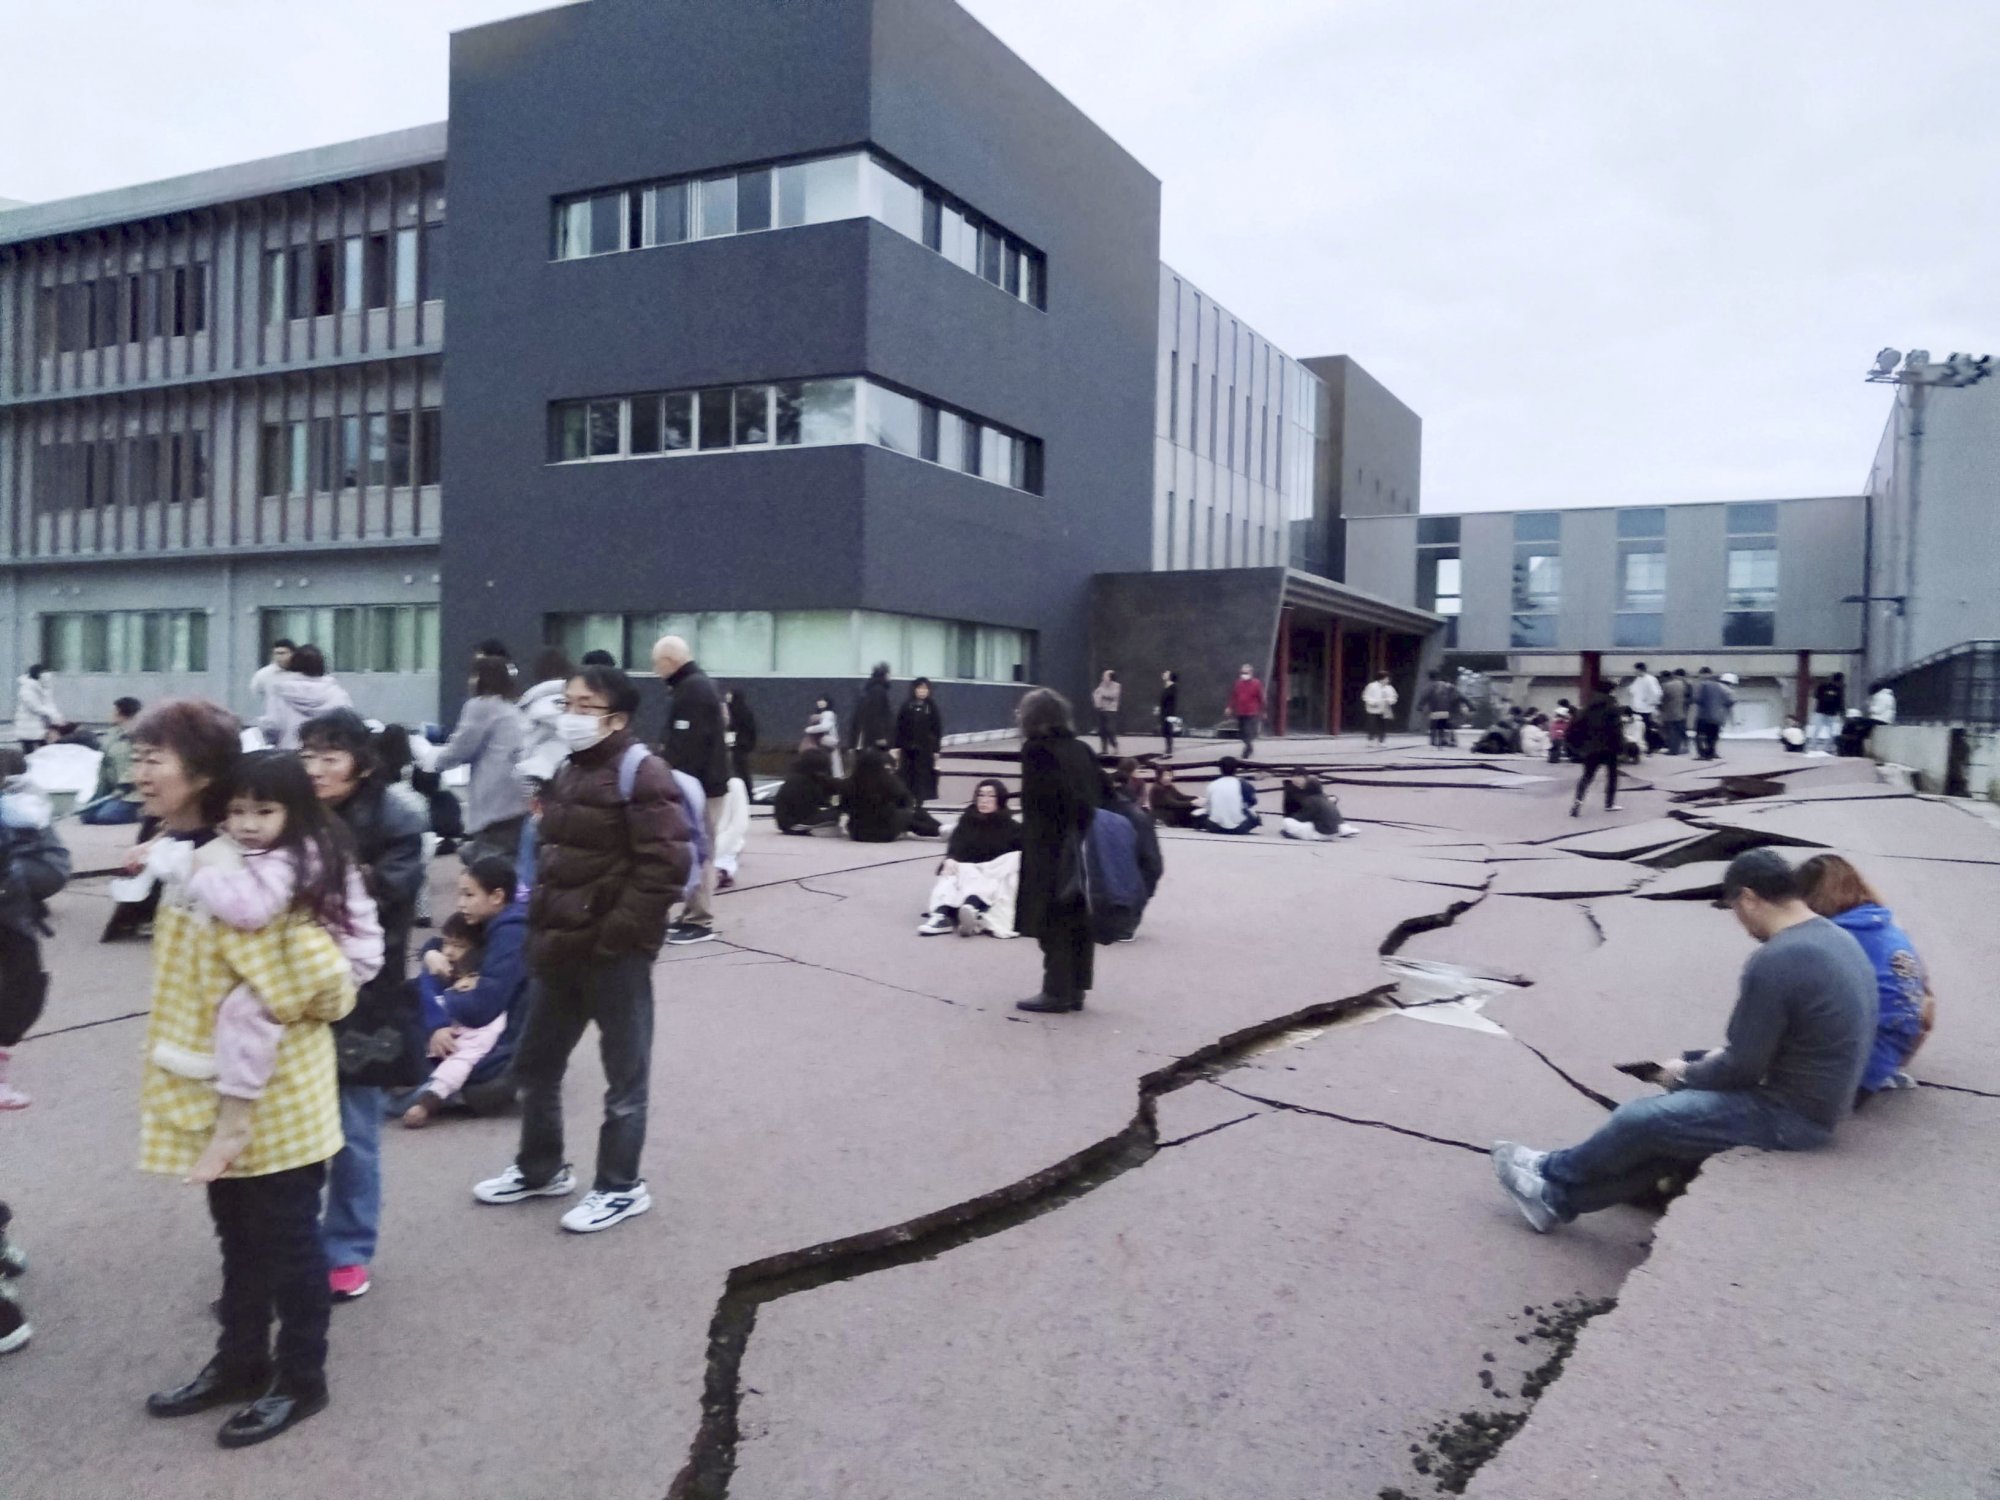 Ιαπωνία: Δρόμοι άνοιξαν στα δύο και κτίρια κατέρρευσαν μετά τα 7,4 Ρίχτερ